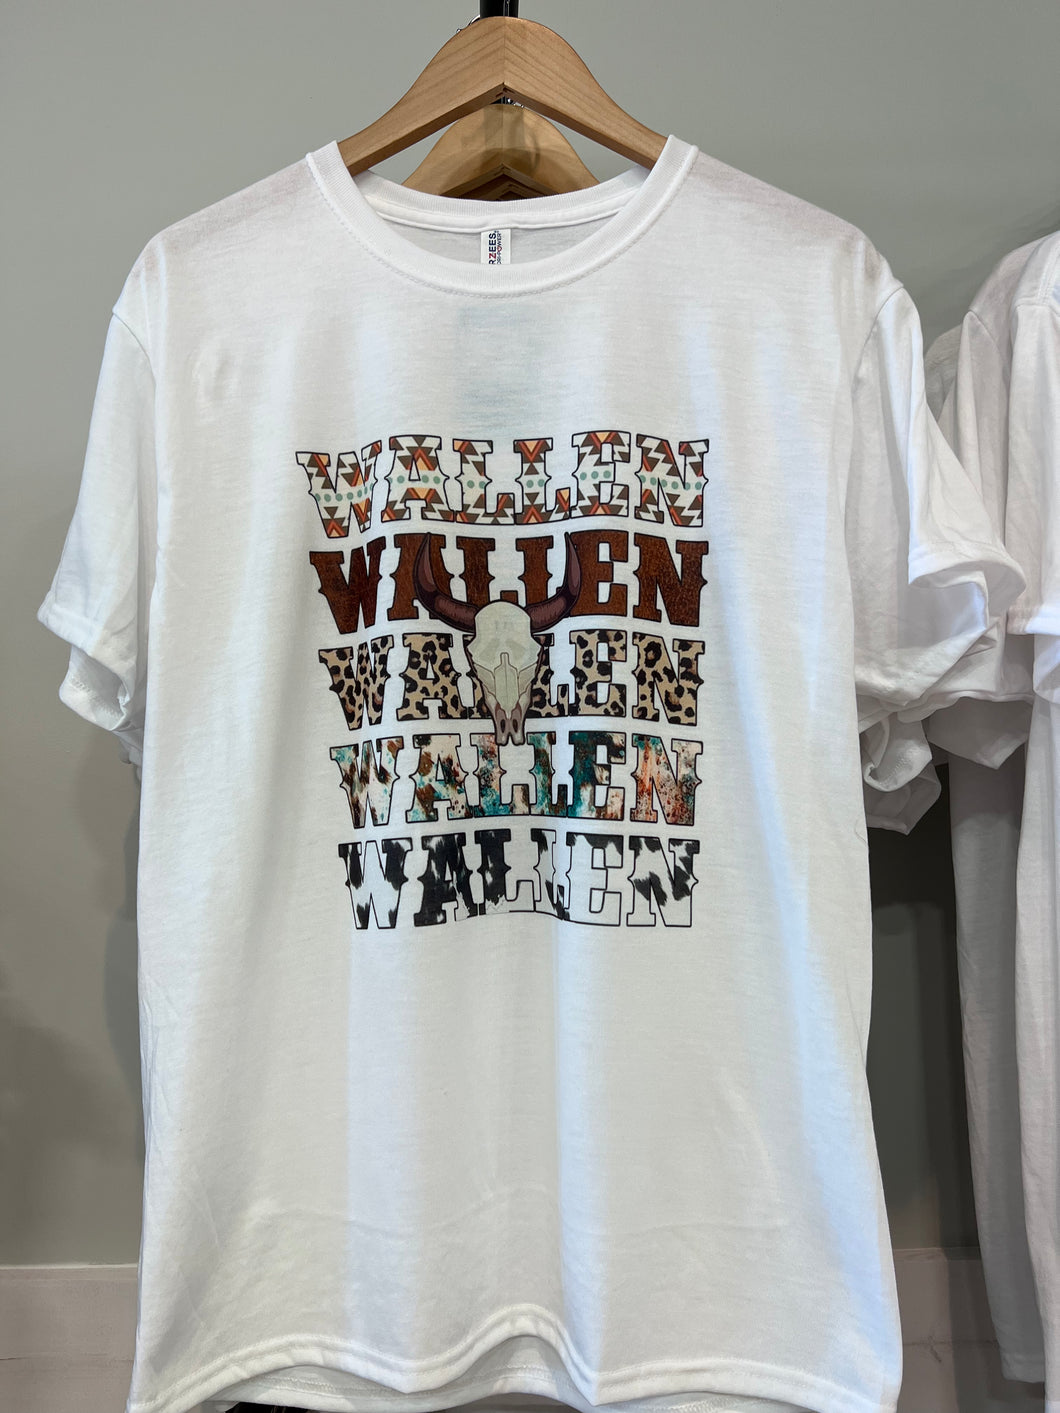 Wallen Cow Print T-Shirt